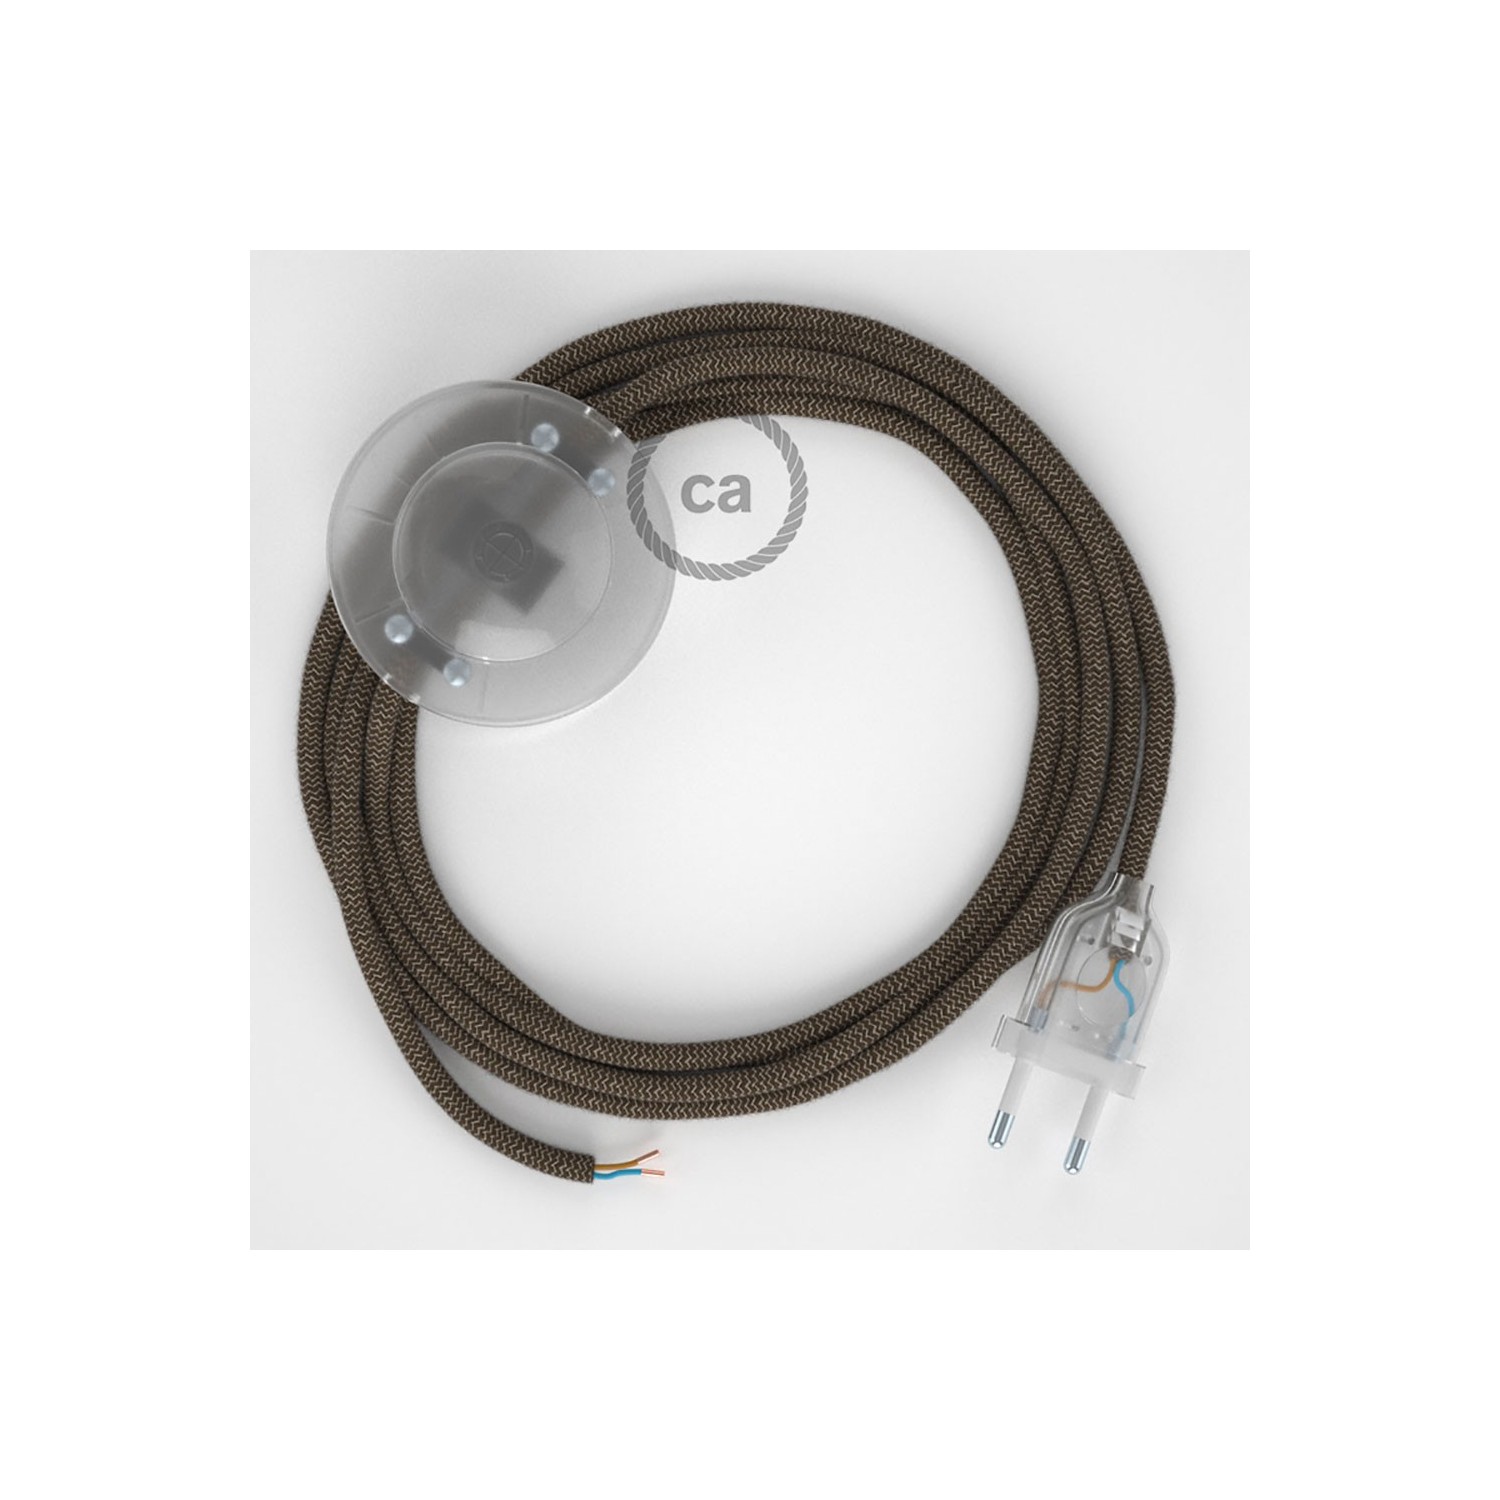 Cableado para lámpara de pie, cable RD73 ZigZag Corteza 3 m. Elige tu el color de la clavija y del interruptor!